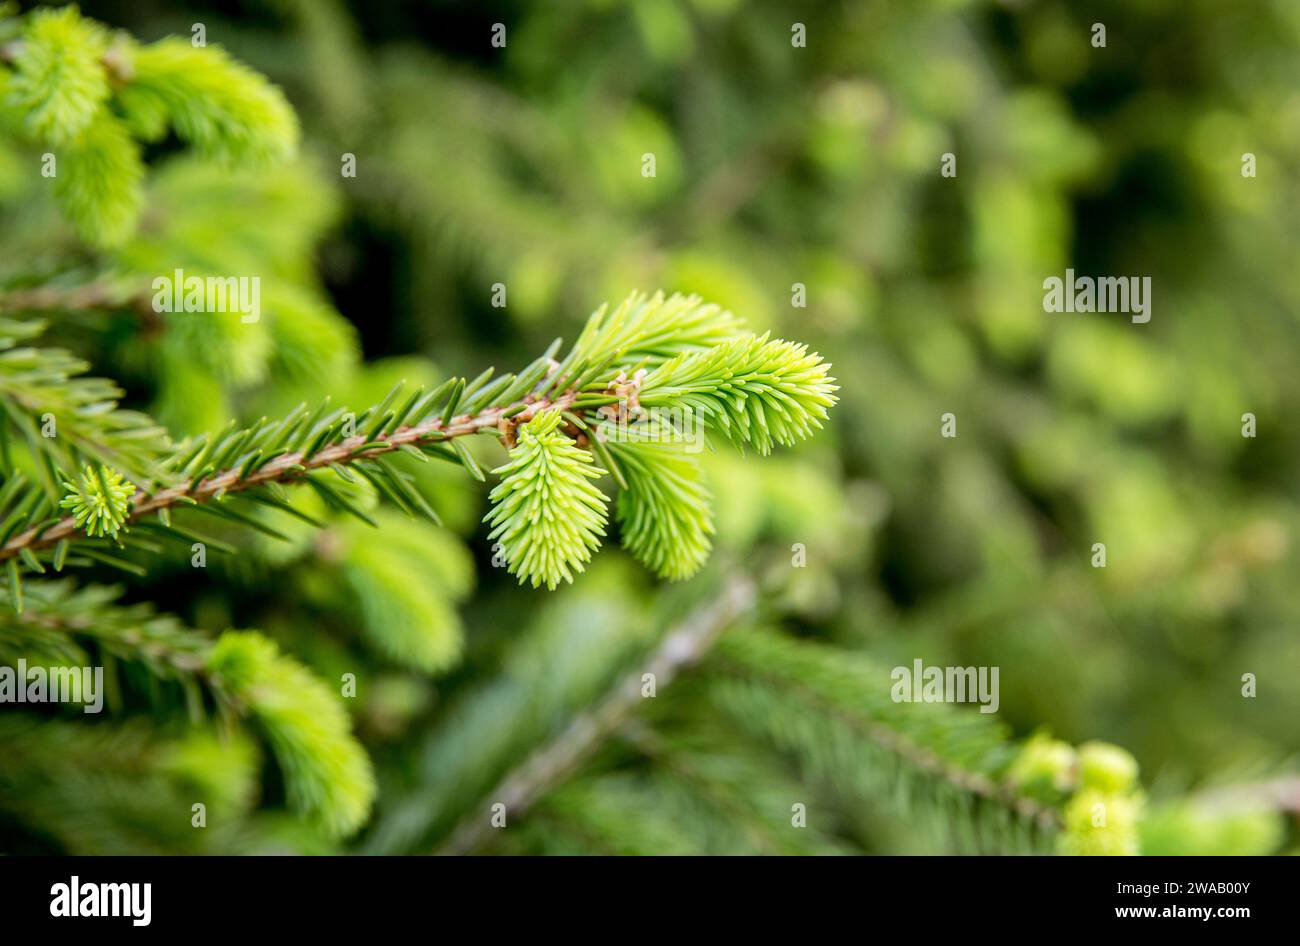 Fichtenbaum Picea frischer Sprung im Frühling draußen von der wachsenden Fichte. Lebensmittel und pflanzliche Arzneistoffe. Stockfoto